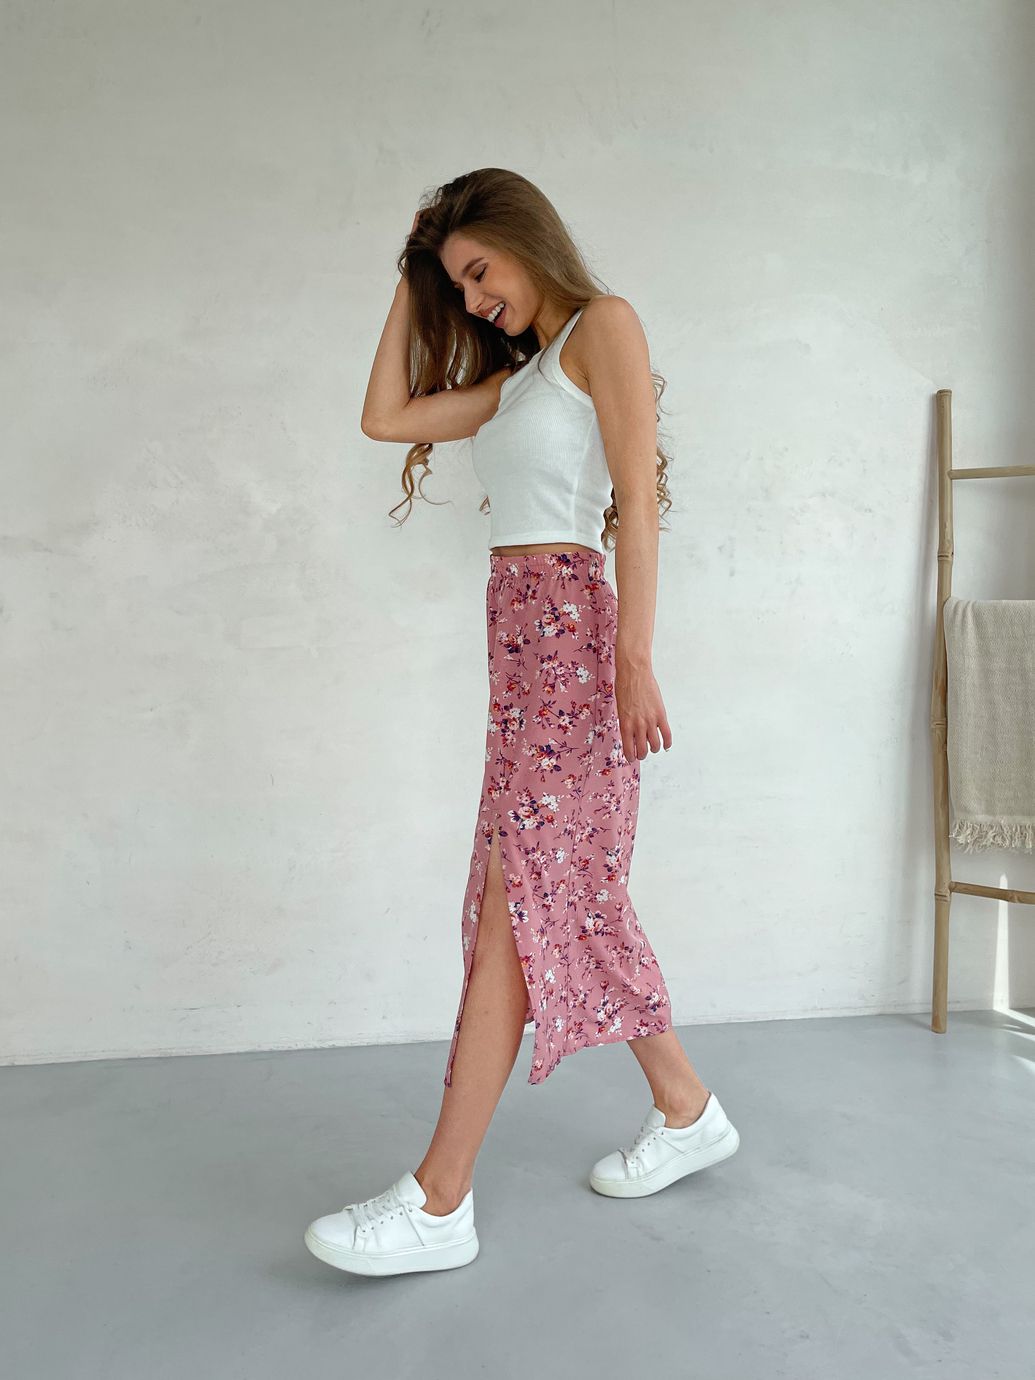 Купить Длинная женская юбка ниже колена с размером в цветочек Merlini Парма 400000103, размер 42-44 (S-M) в интернет-магазине